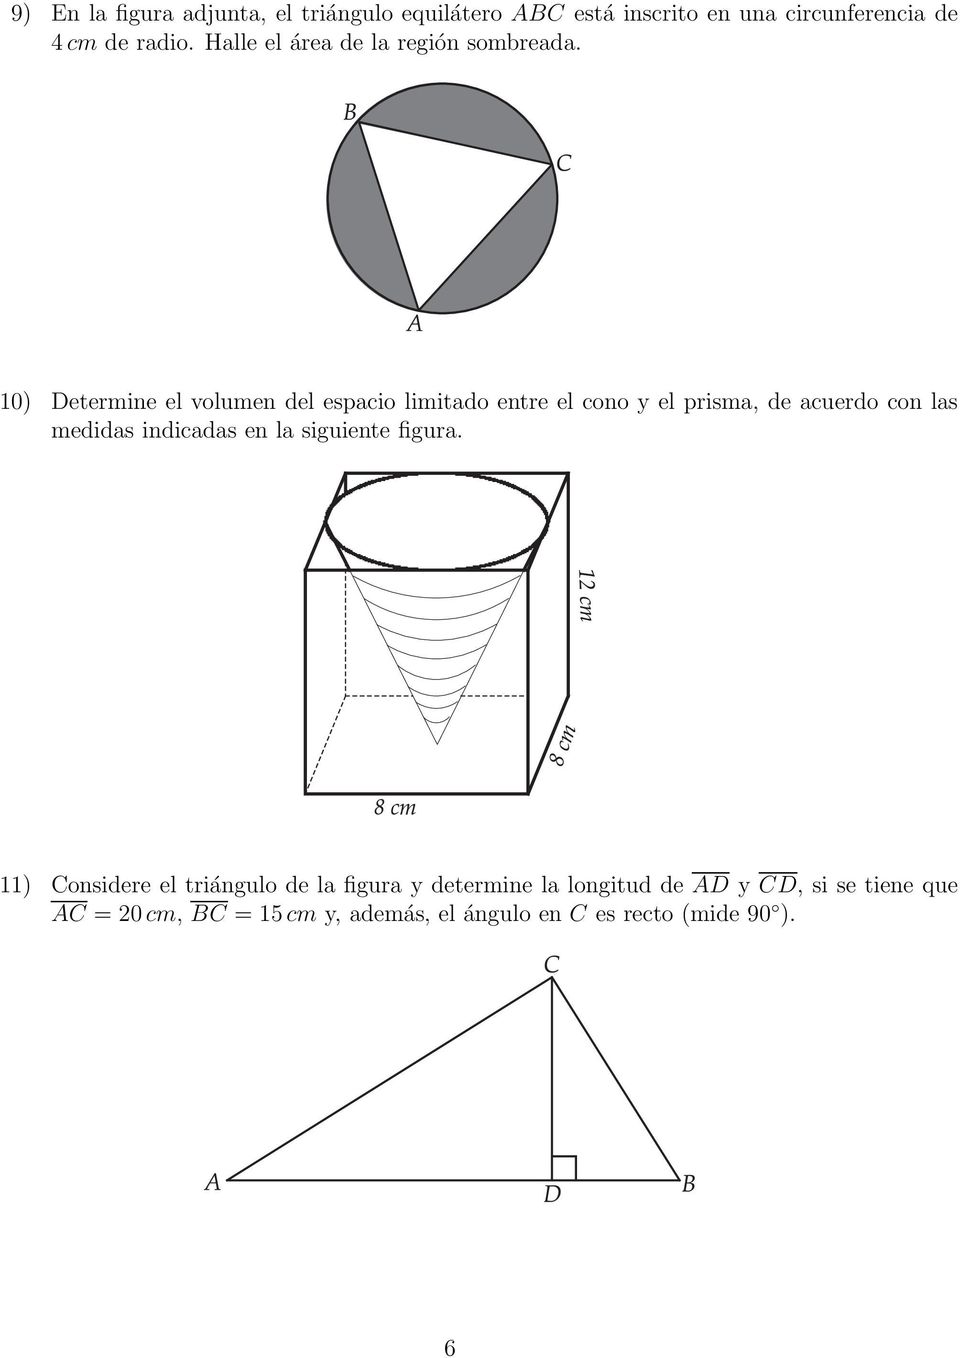 10) Determine el volumen del espacio limitado entre el cono y el prisma, de acuerdo con las medidas